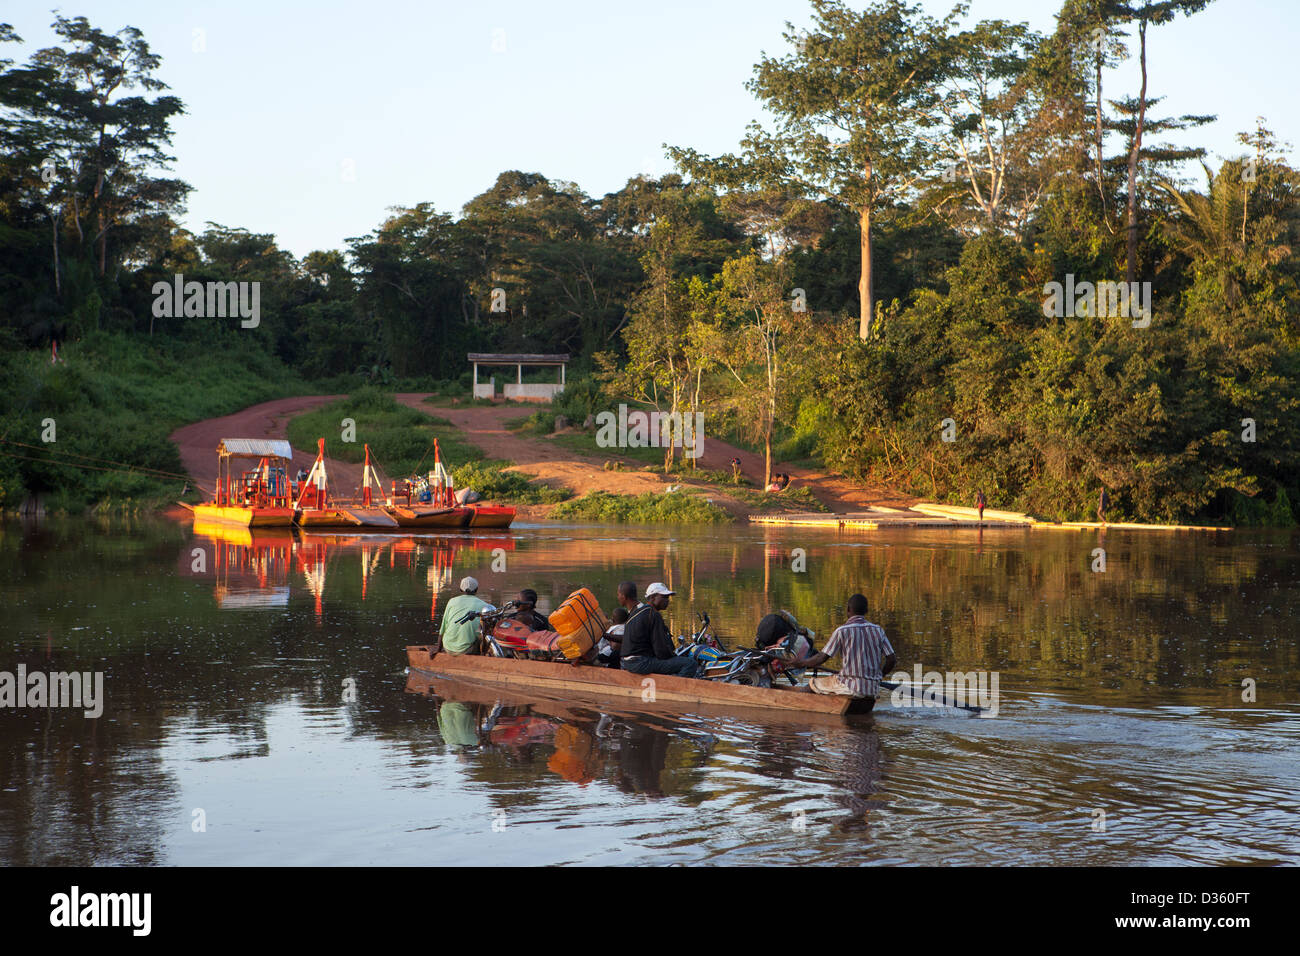 Kongo, 26. September 2012: ein kleine Kanu-Taxi-Service bringt Motorräder und Passagiere über diesen Fluss. Stockfoto